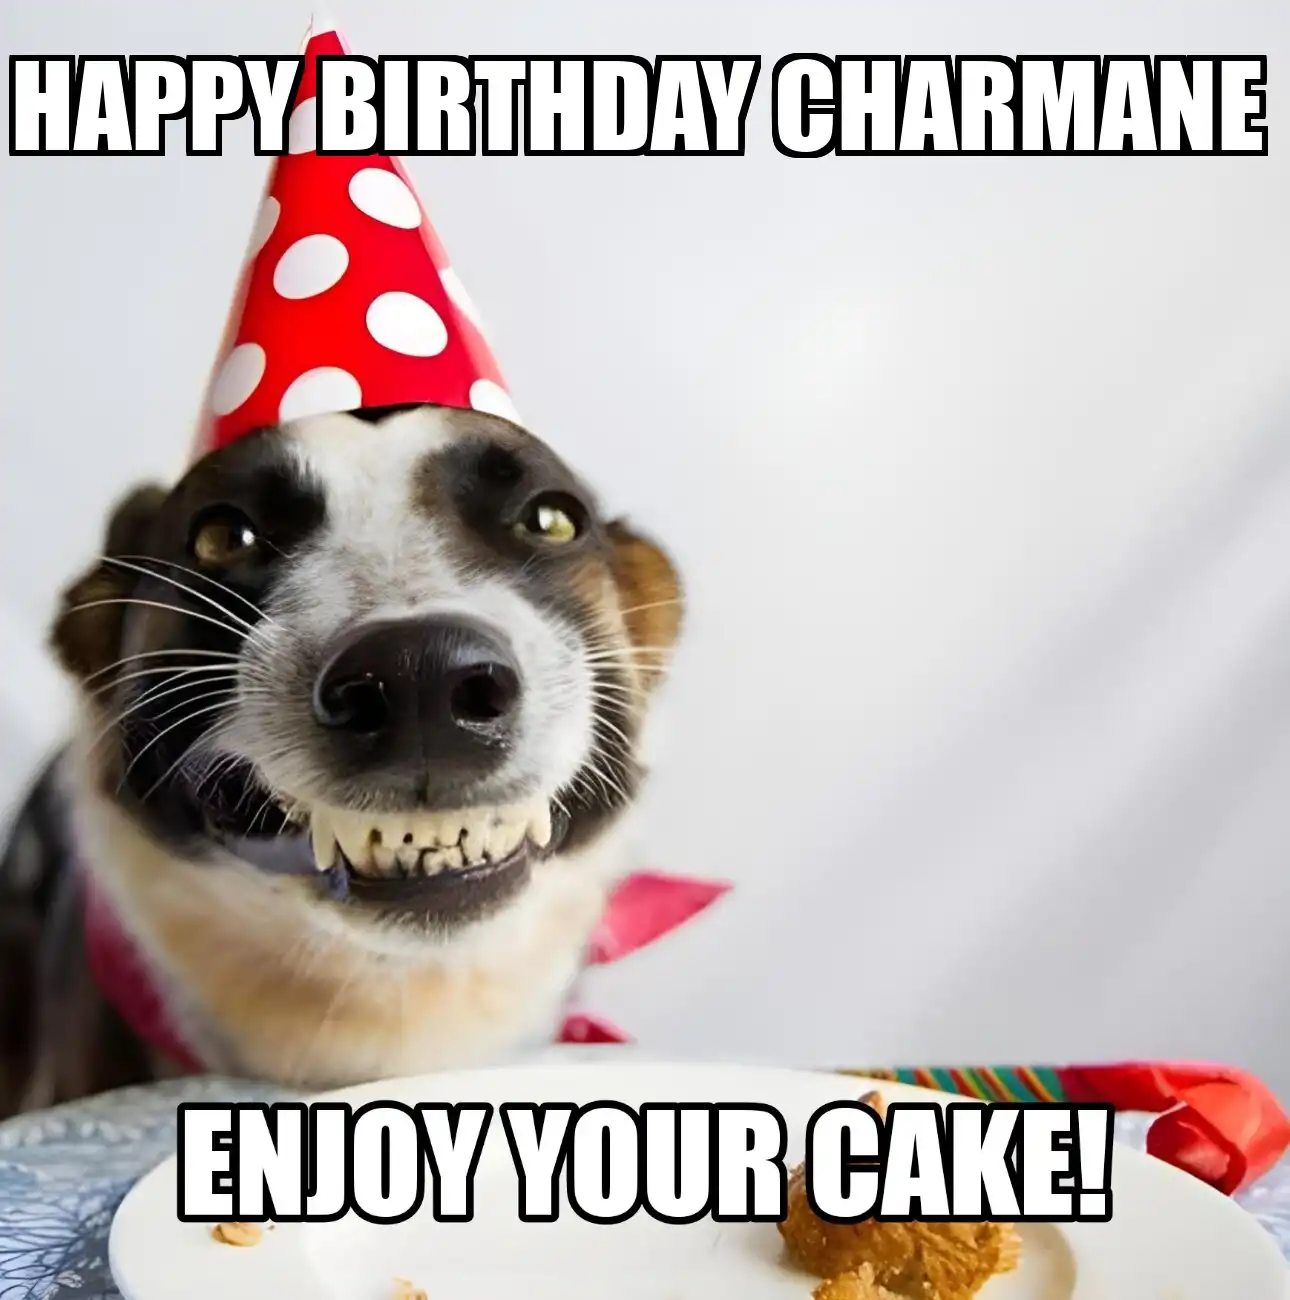 Happy Birthday Charmane Enjoy Your Cake Dog Meme